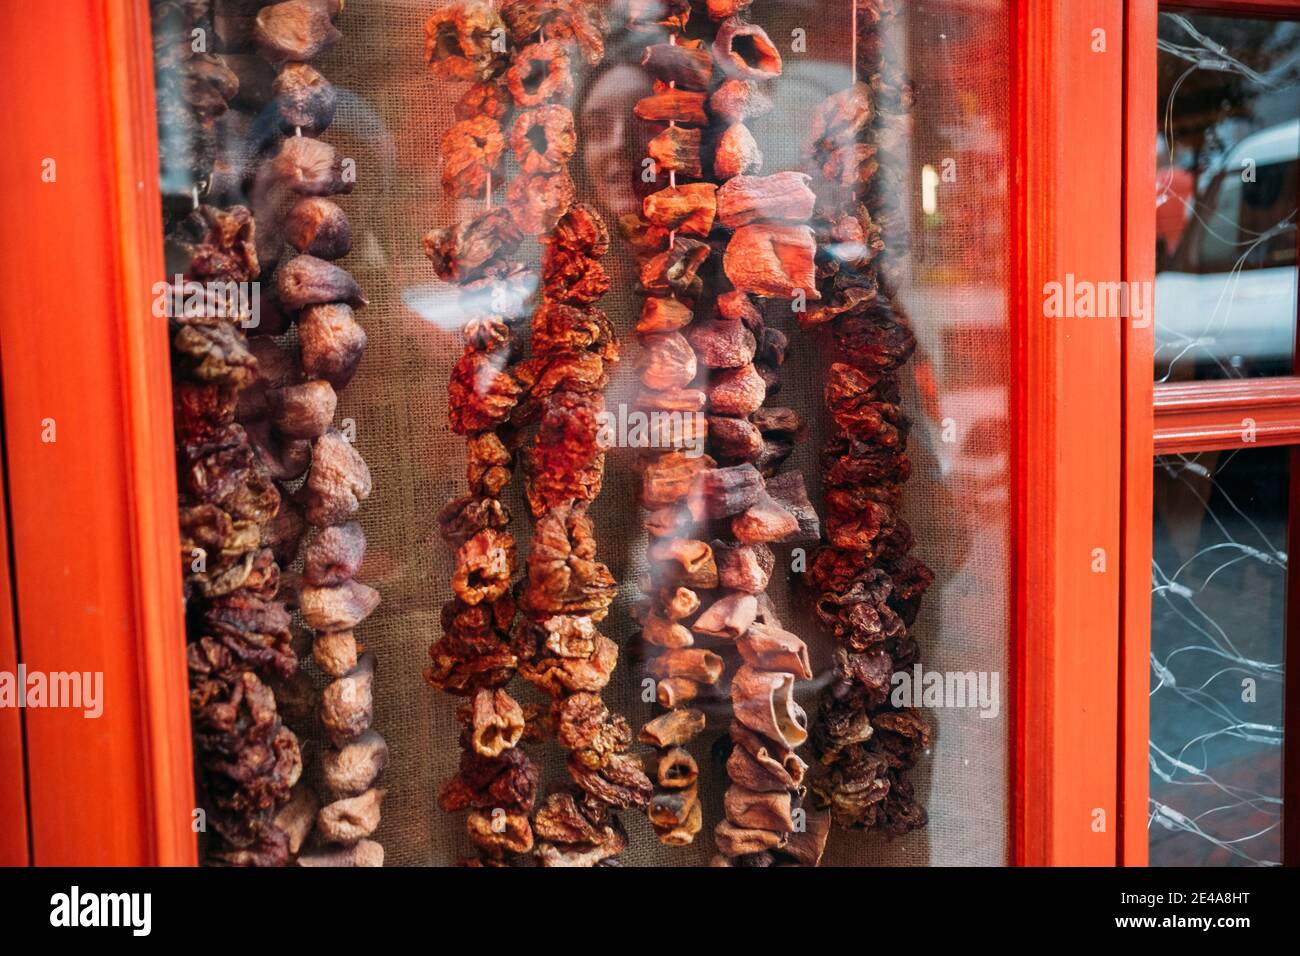 TÜRKEI, ISTANBUL, 14. DEZEMBER 2018: Getrocknete Früchte hinter dem Glas einer roten Holzvitrine. Stockfoto